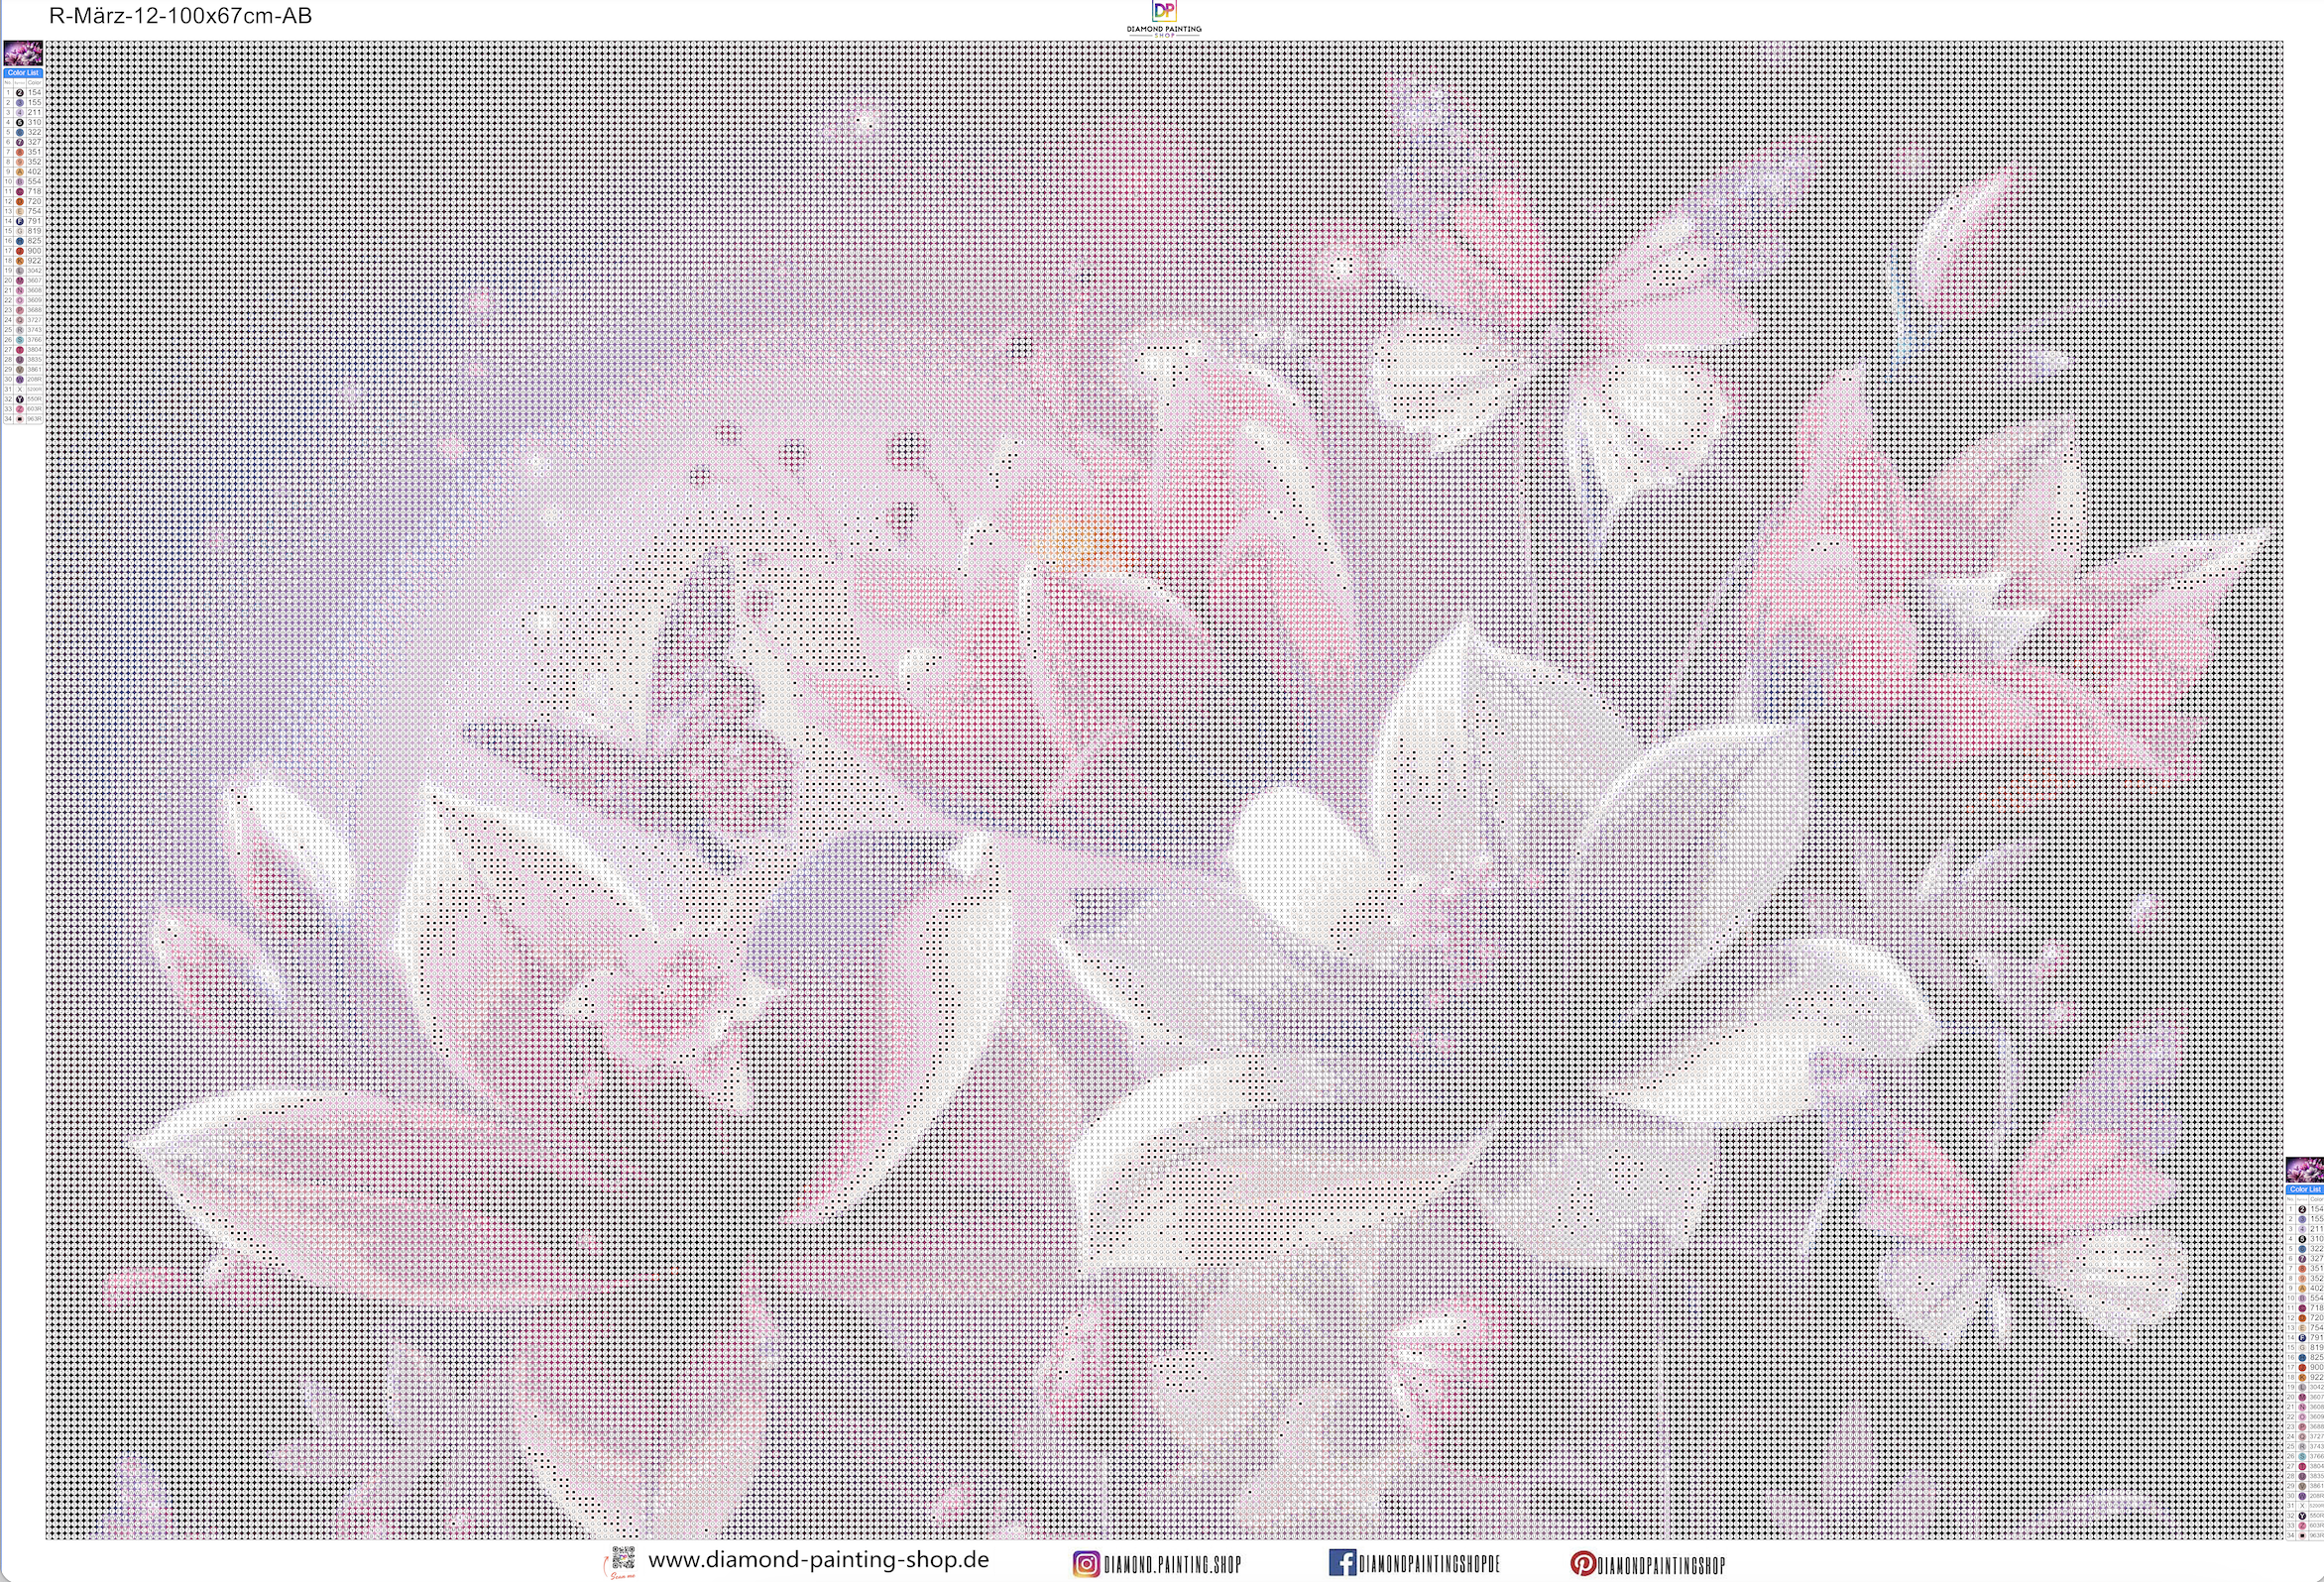 März | XXL Fantasy Flowers & Butterflys mit AB Farben